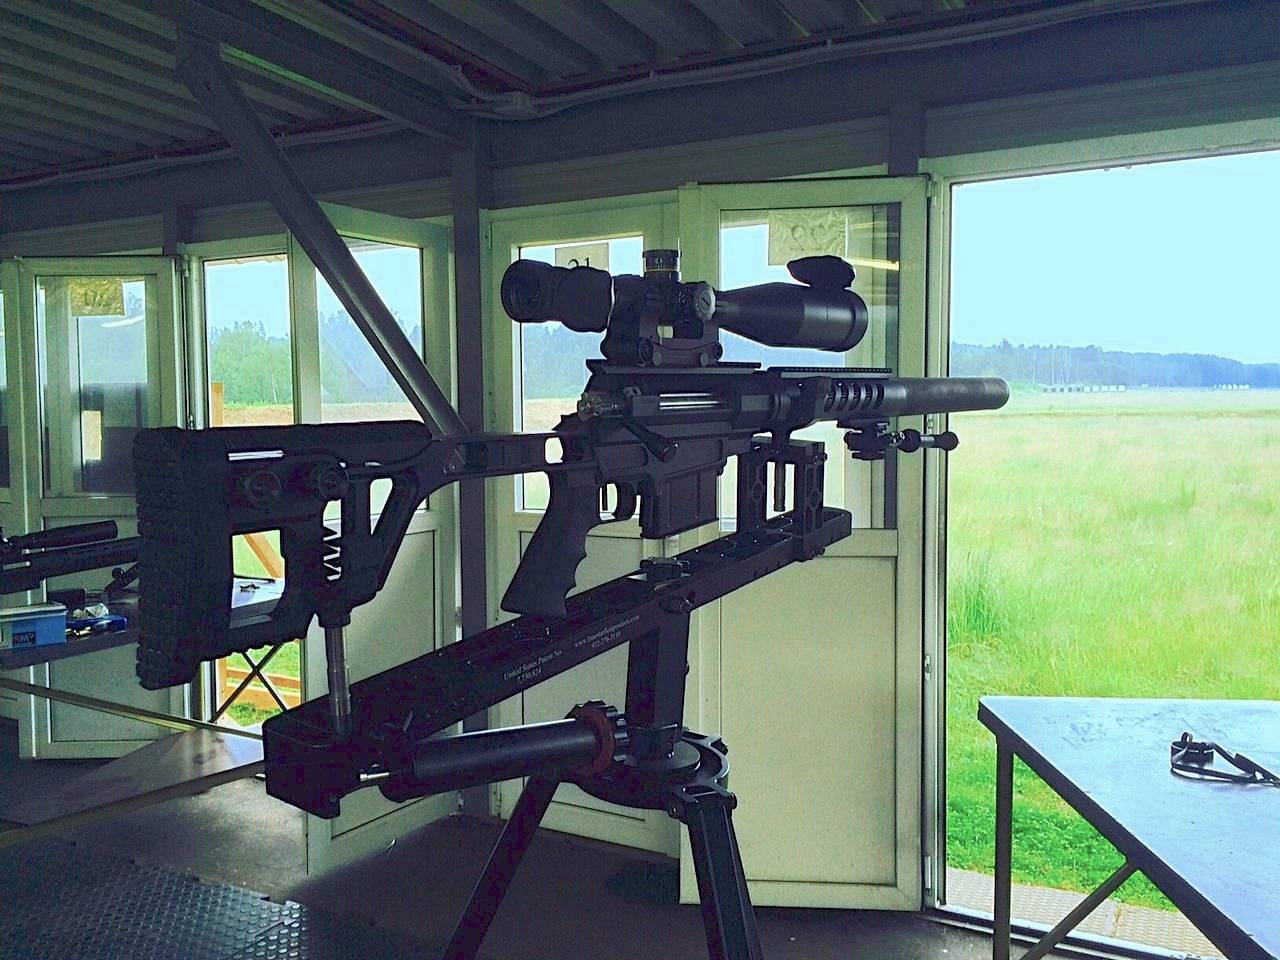 Снайперская винтовка лобаева — википедия. что такое снайперская винтовка лобаева